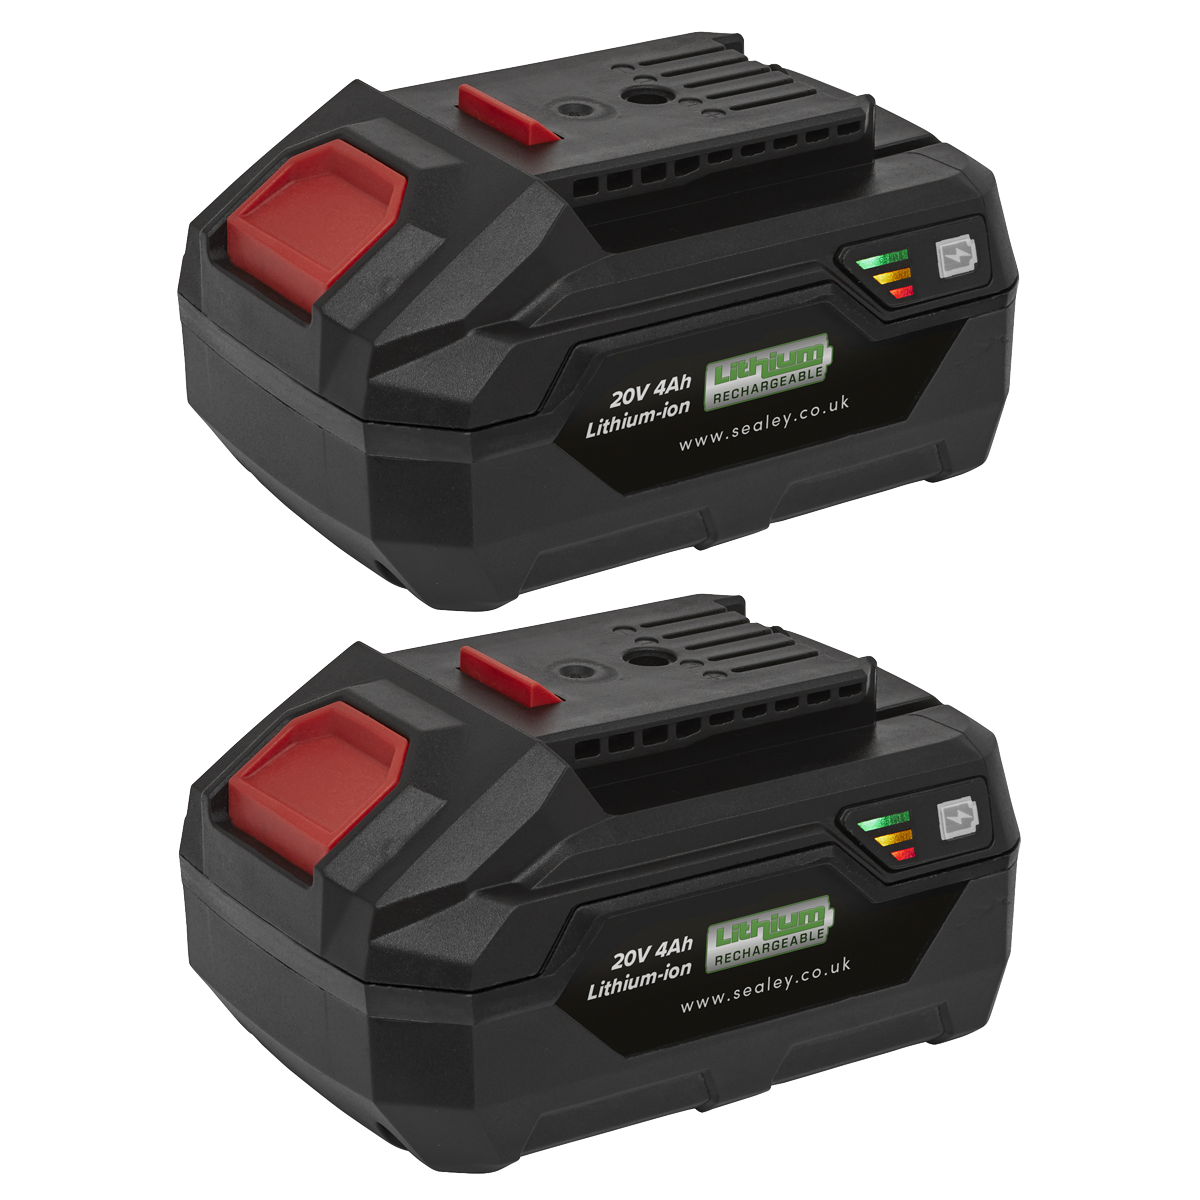 Power Tool Battery Pack 20V 4Ah Kit for SV20V Series